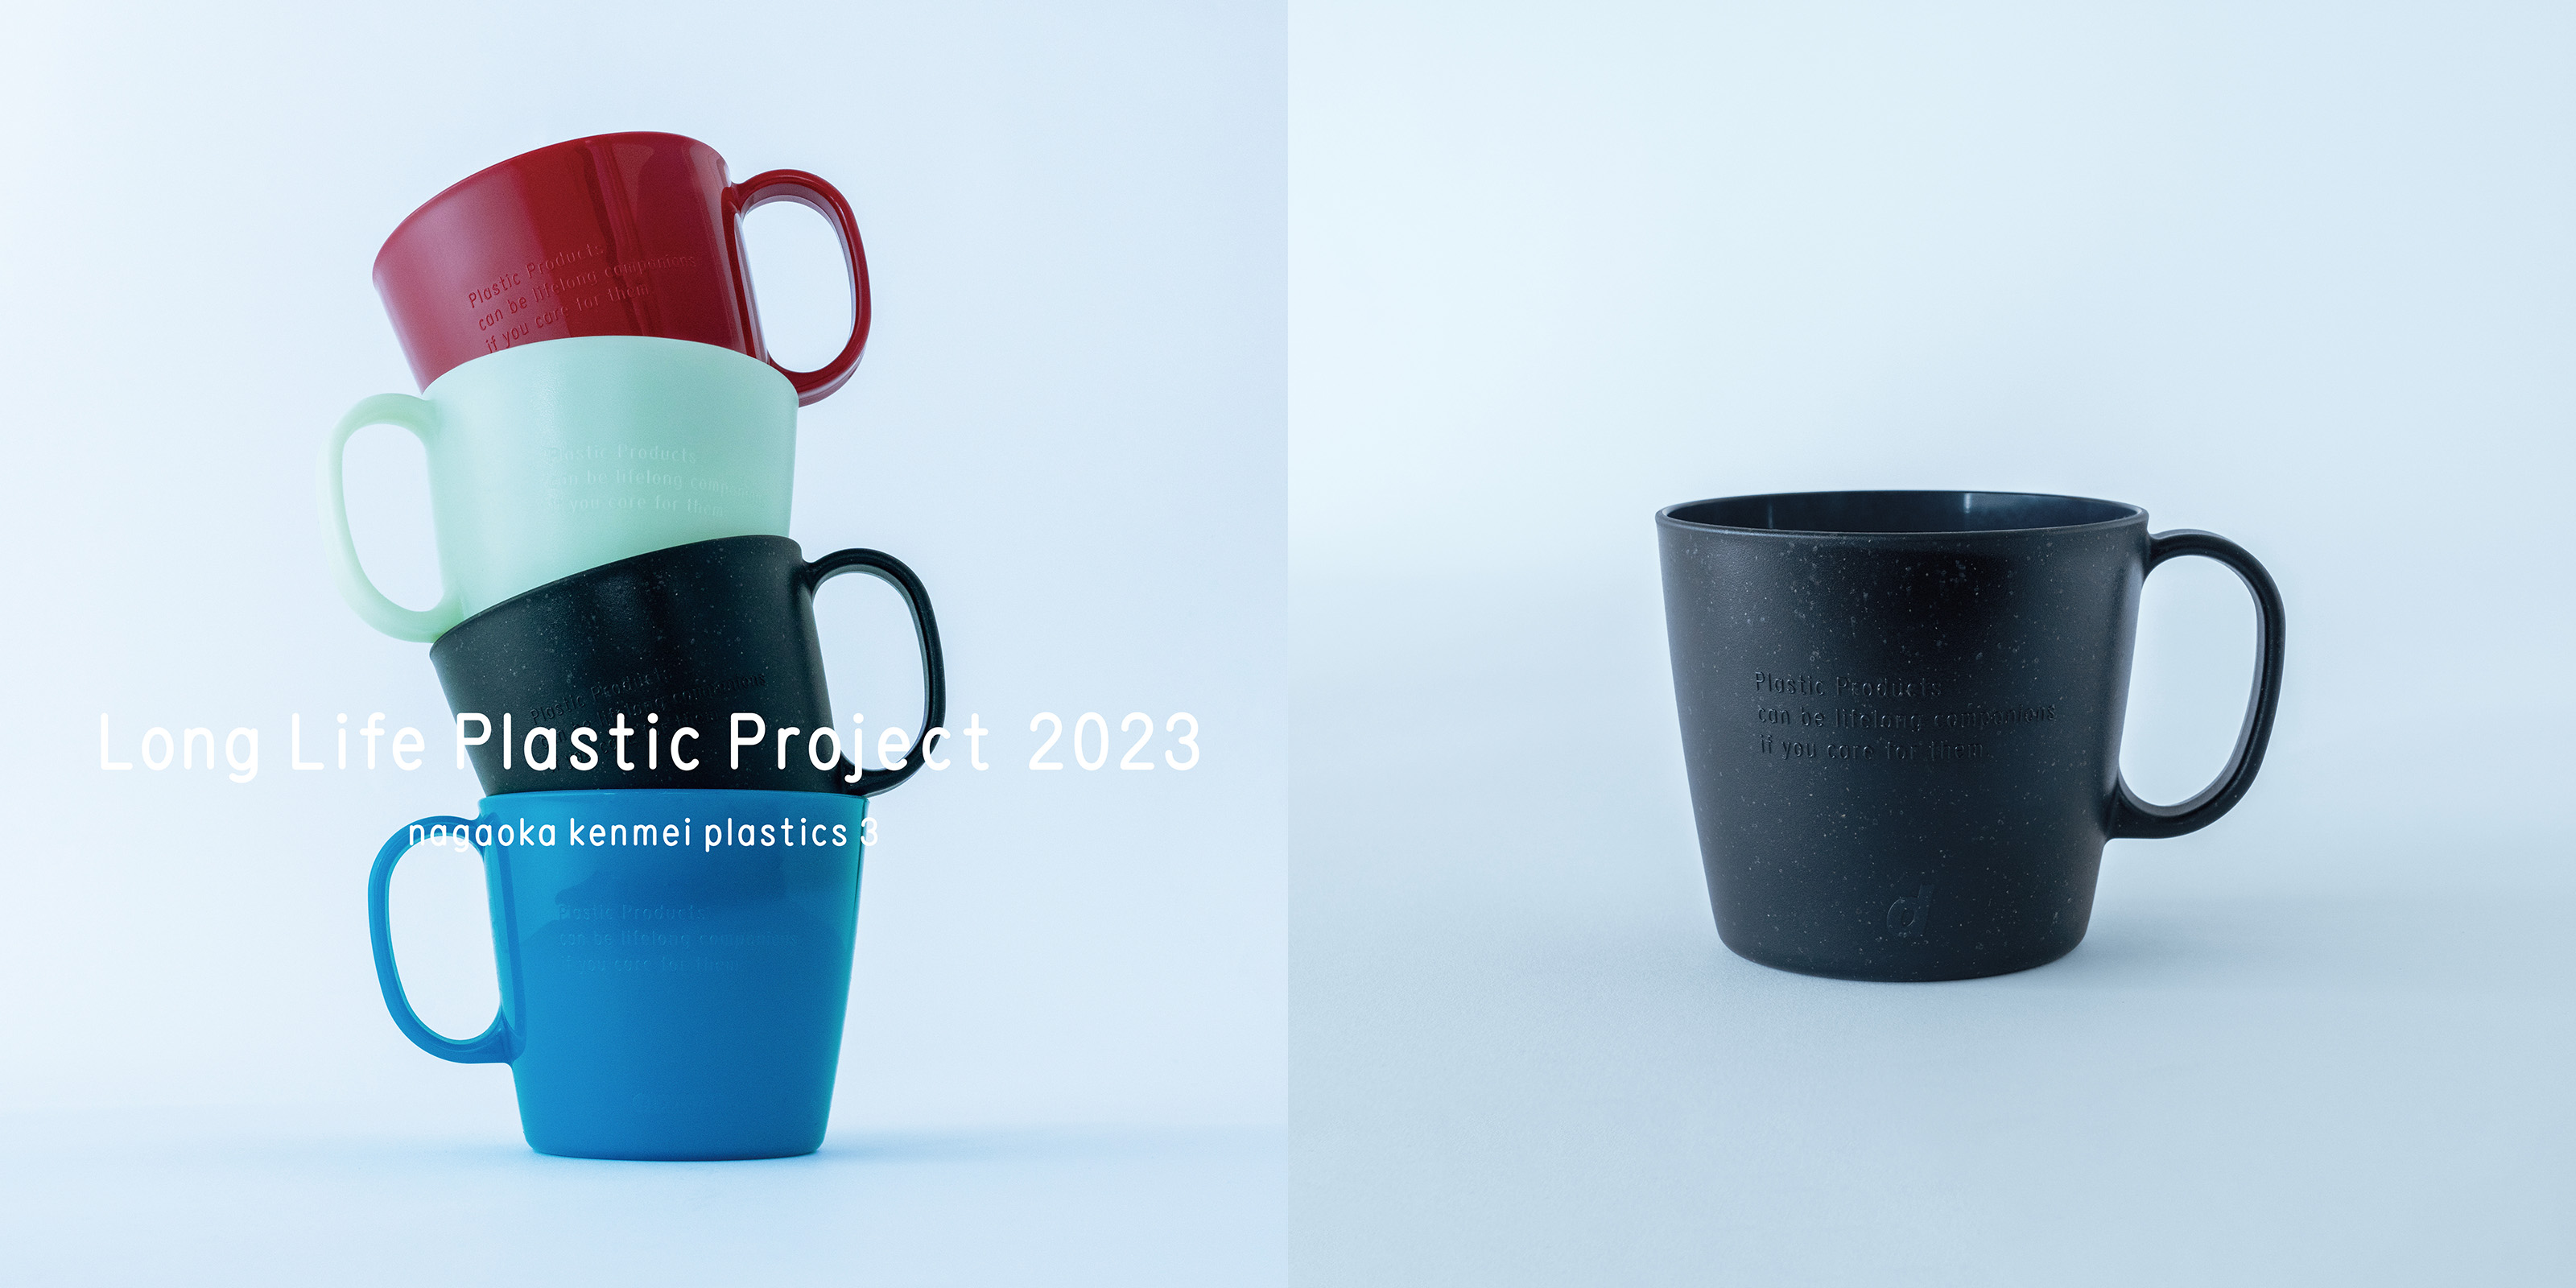 Long Life Plastic Project 2023 プラスチックマグカップ・メタブラック